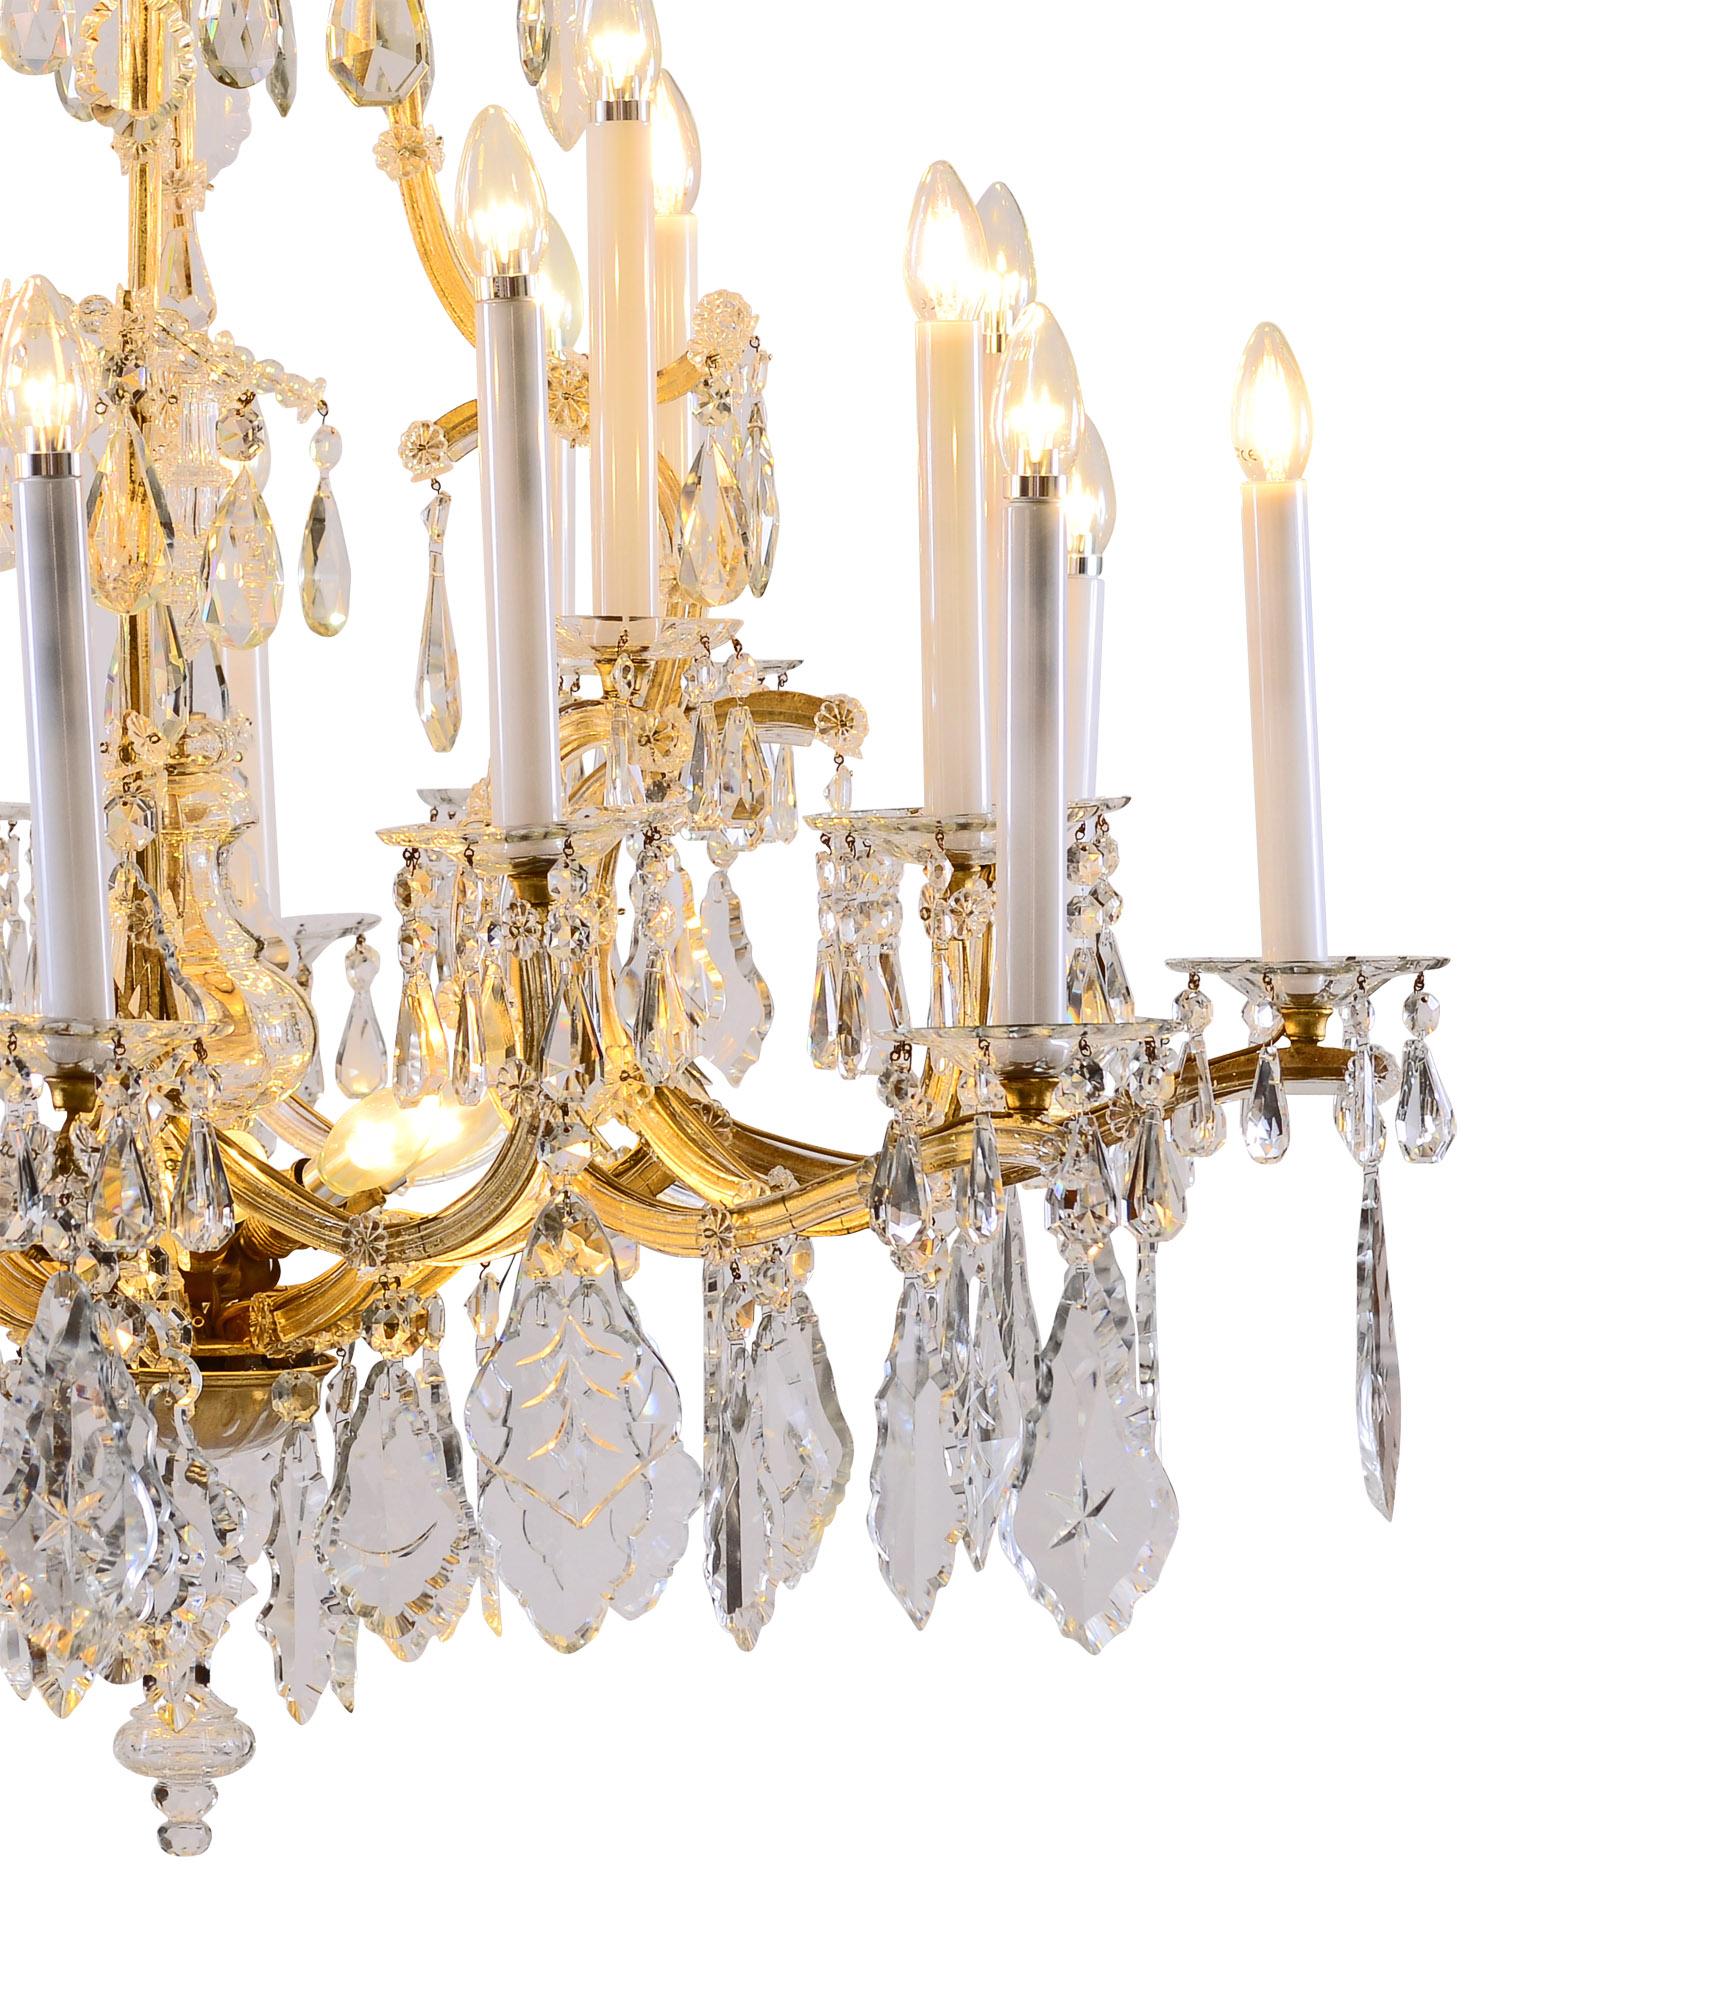 Très grand lustre Marie-Thérèse avec 28 bougies matériel cadre métallique avec décoration balustre au centre, richement décoré de prisme en verre.
Ce chandelier est en parfait état et convient pour les États-Unis. 
 